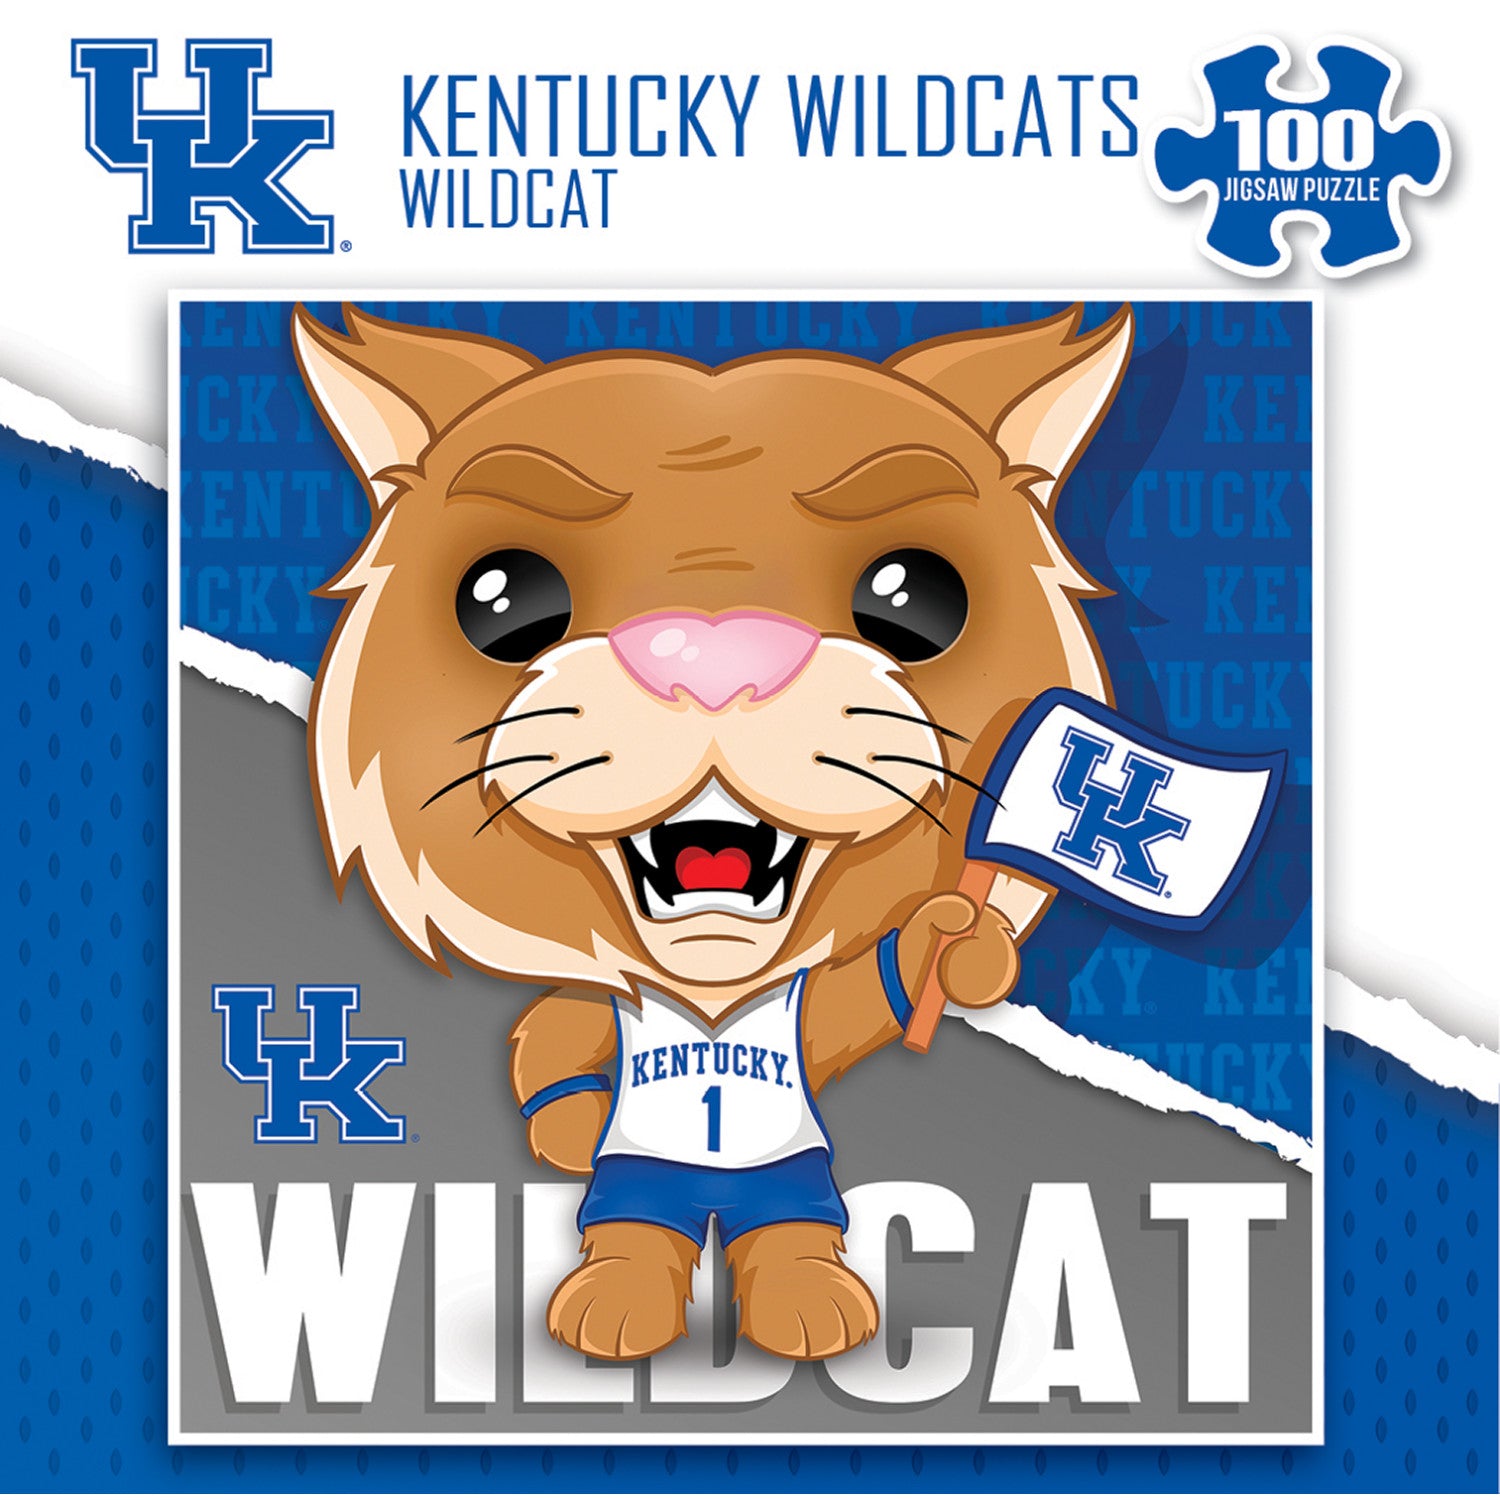 Wildcat - Kentucky Wildcats Mascot 100 Piece Jigsaw Puzzle